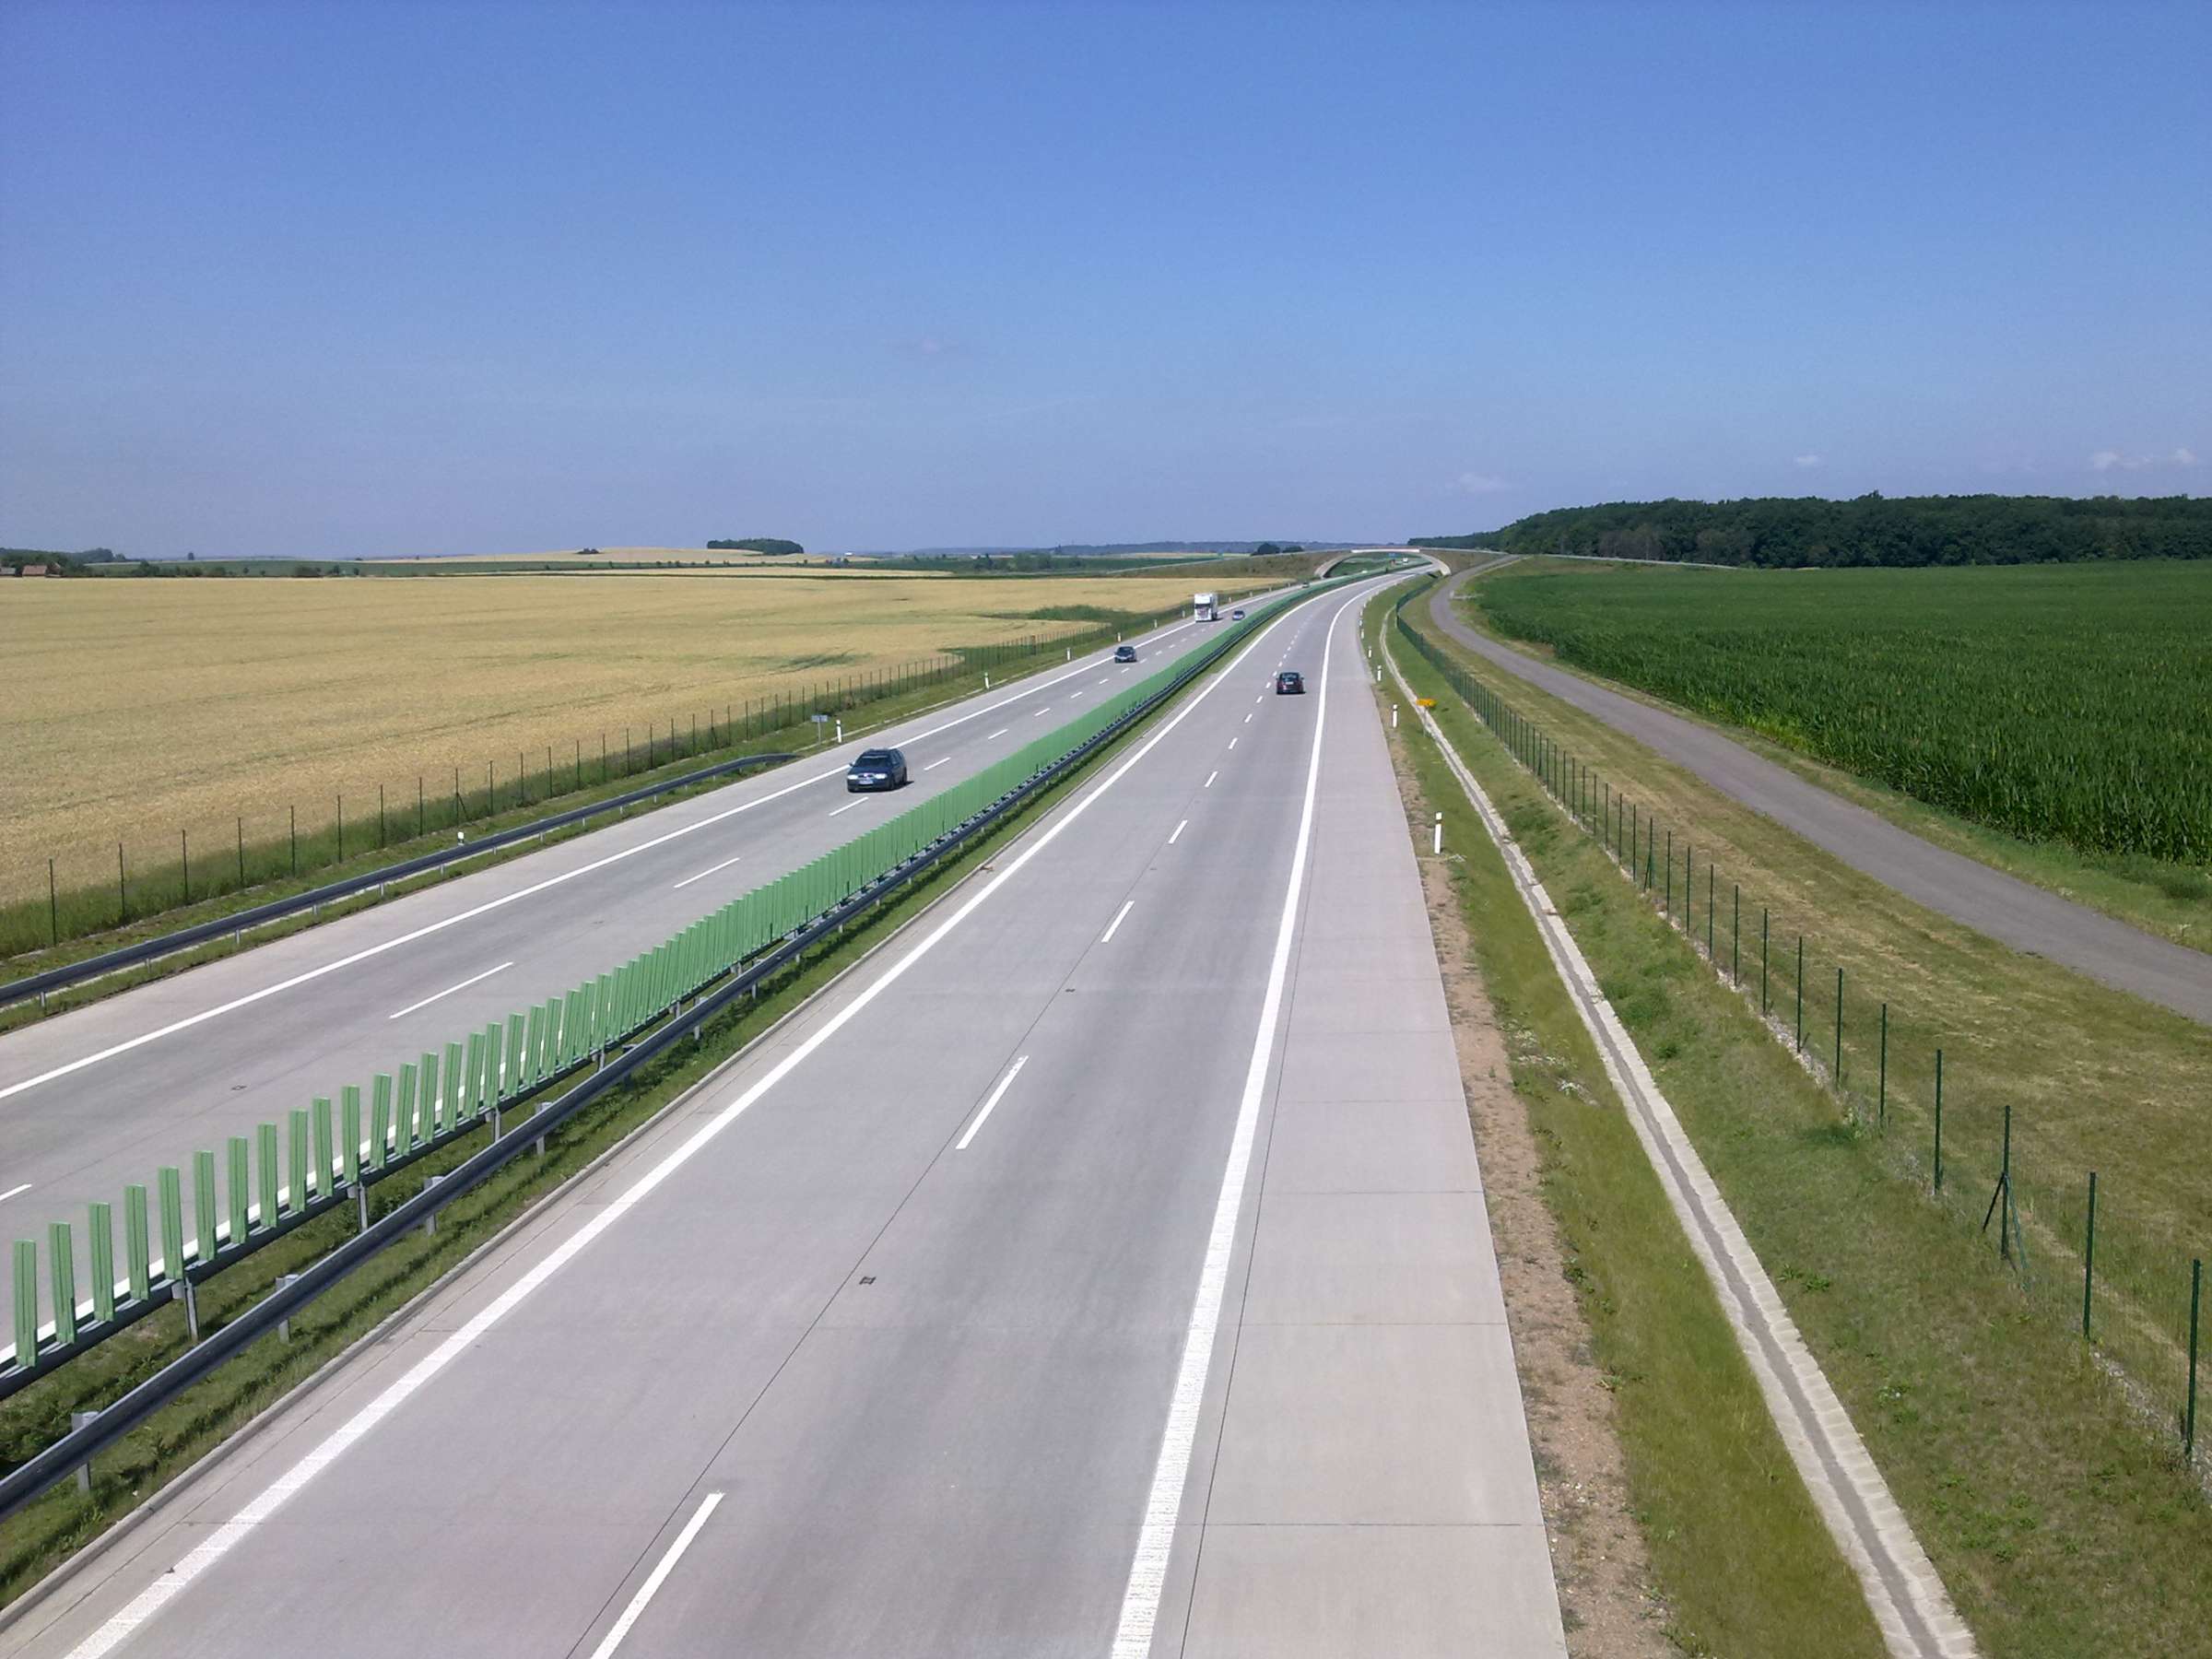 Letos se otevře 23,5 km nových dálnic a 93 km dokončených železničních staveb